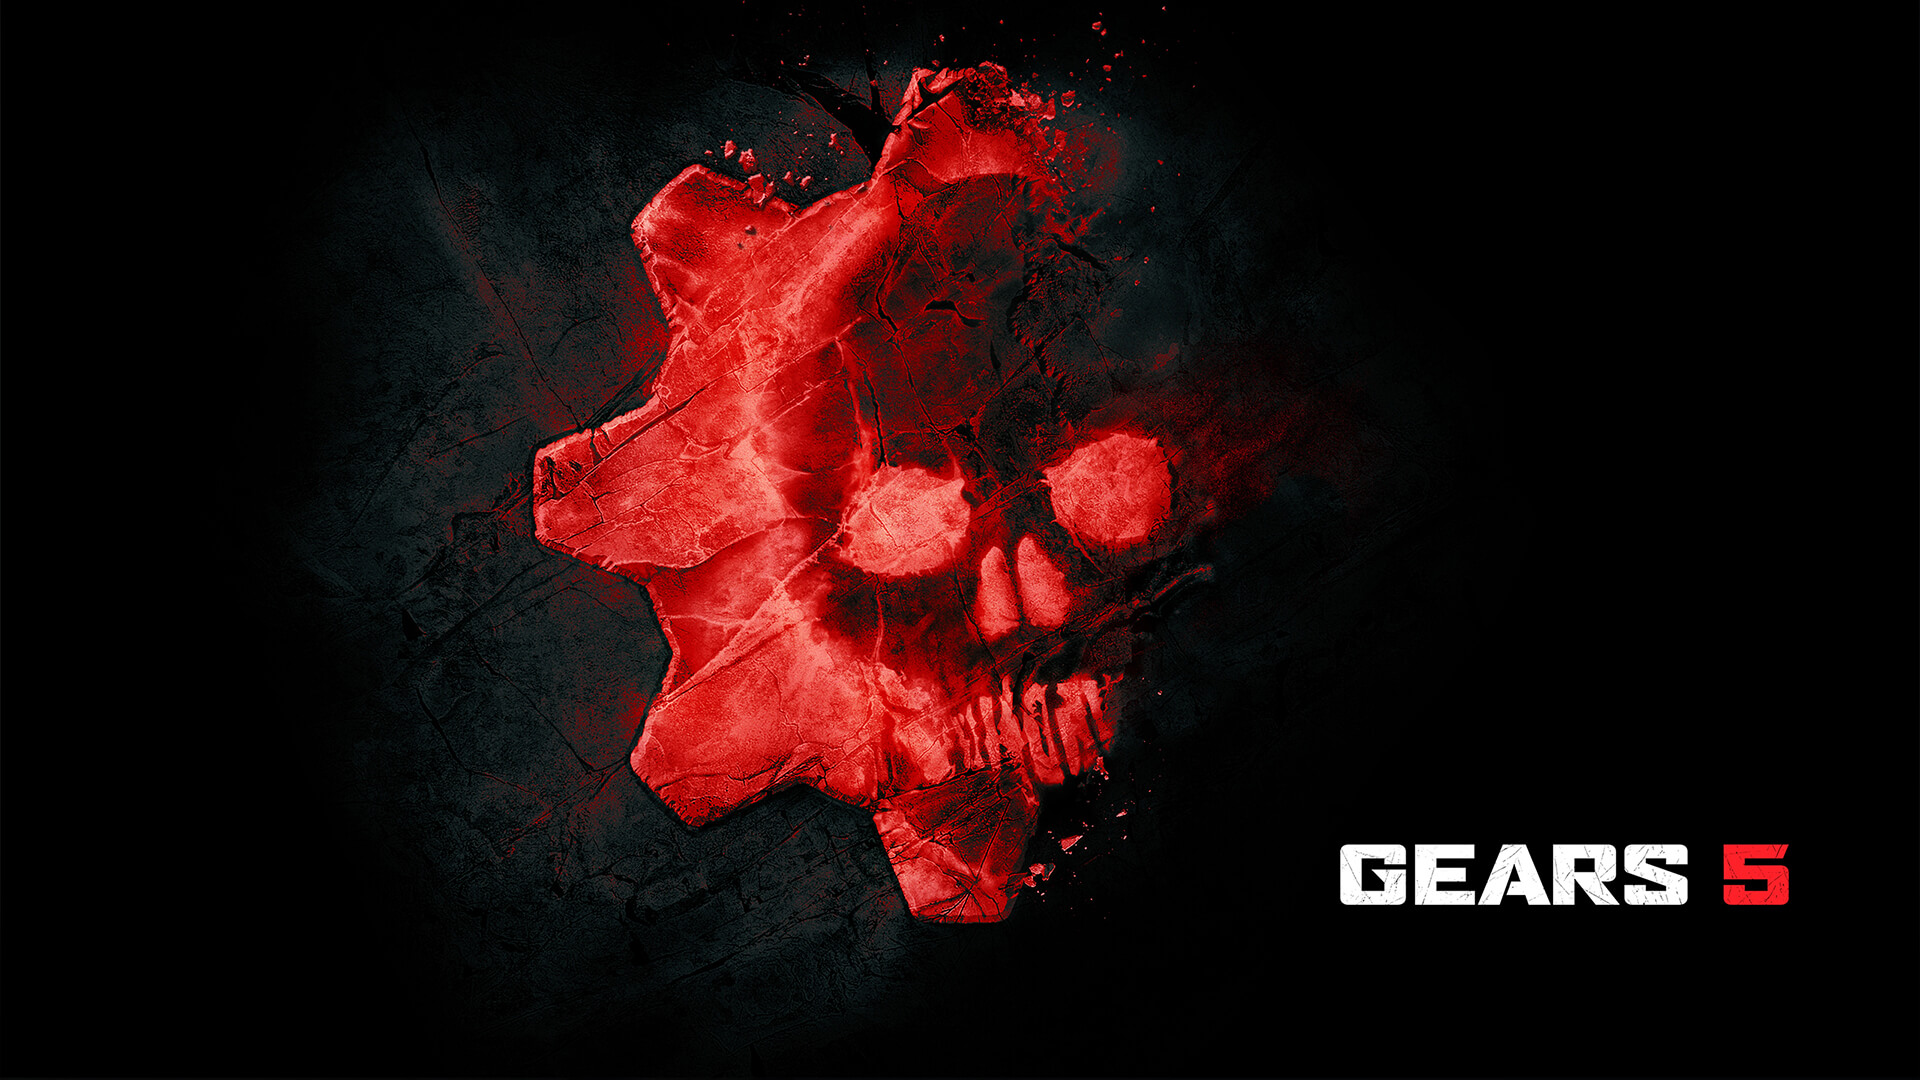 Gears 5 menerima "skor sempurna" dari situs yang mengevaluasi aksesibilitas dalam video game